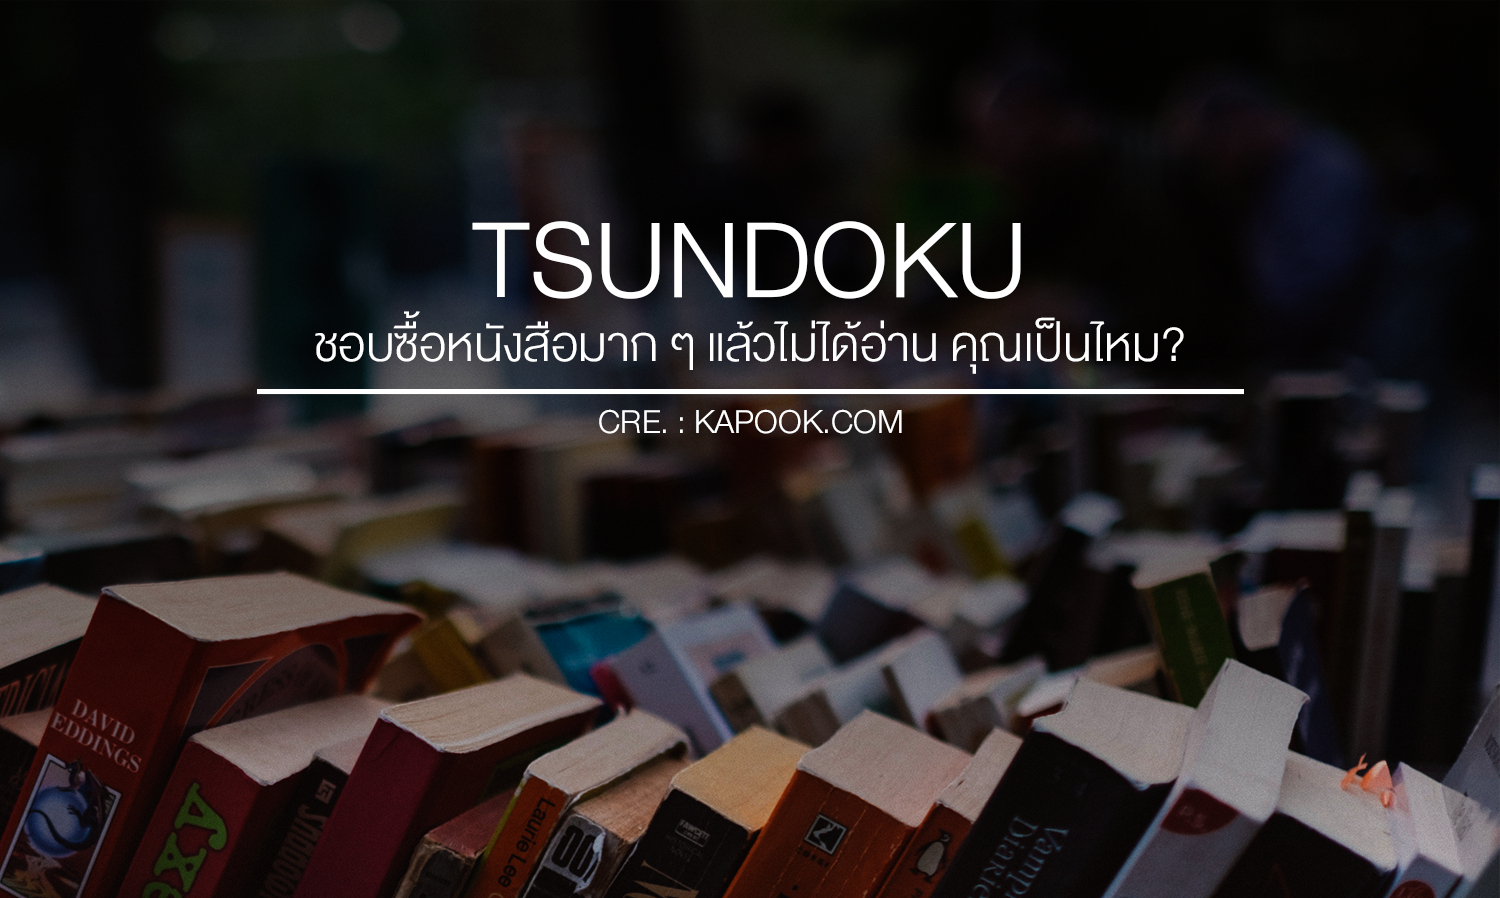 Tsundoku ชอบซื้อหนังสือมาก ๆ แล้วไม่ได้อ่าน คุณเป็นไหม?